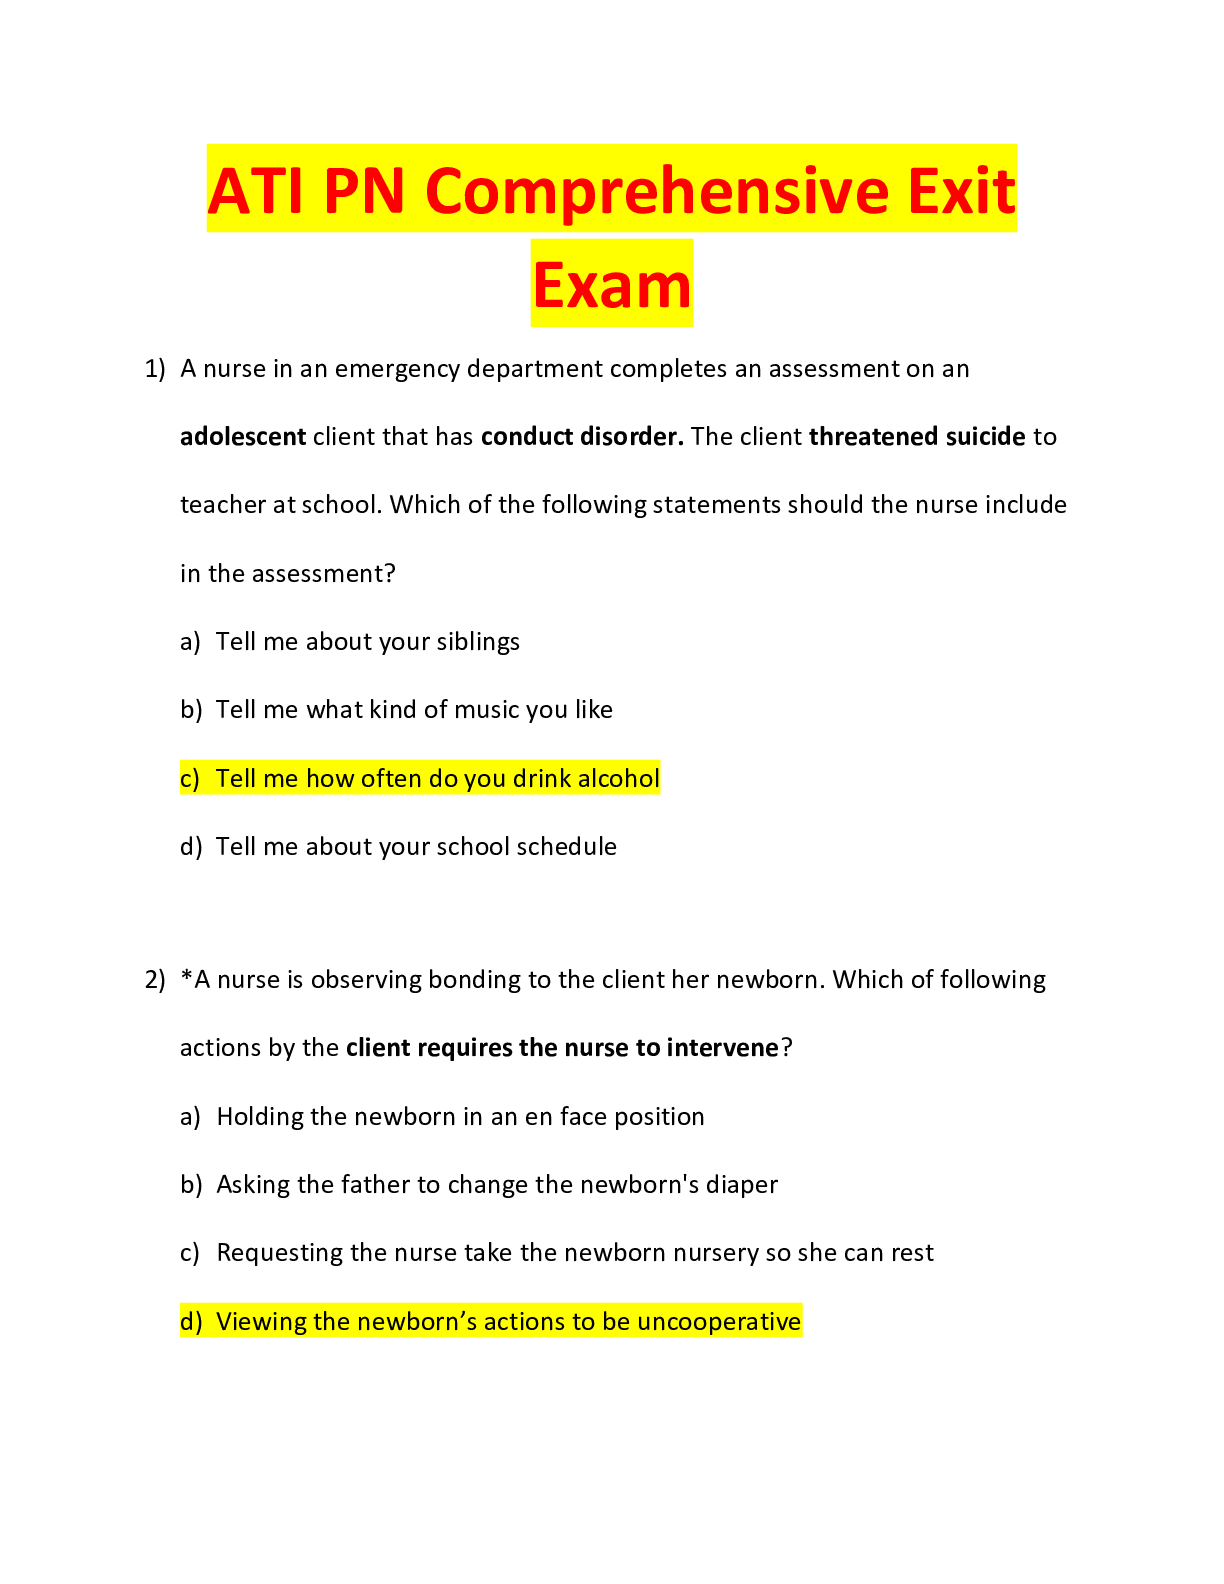 ATI PN Comprehensive Exit Exam LATEST VERSION